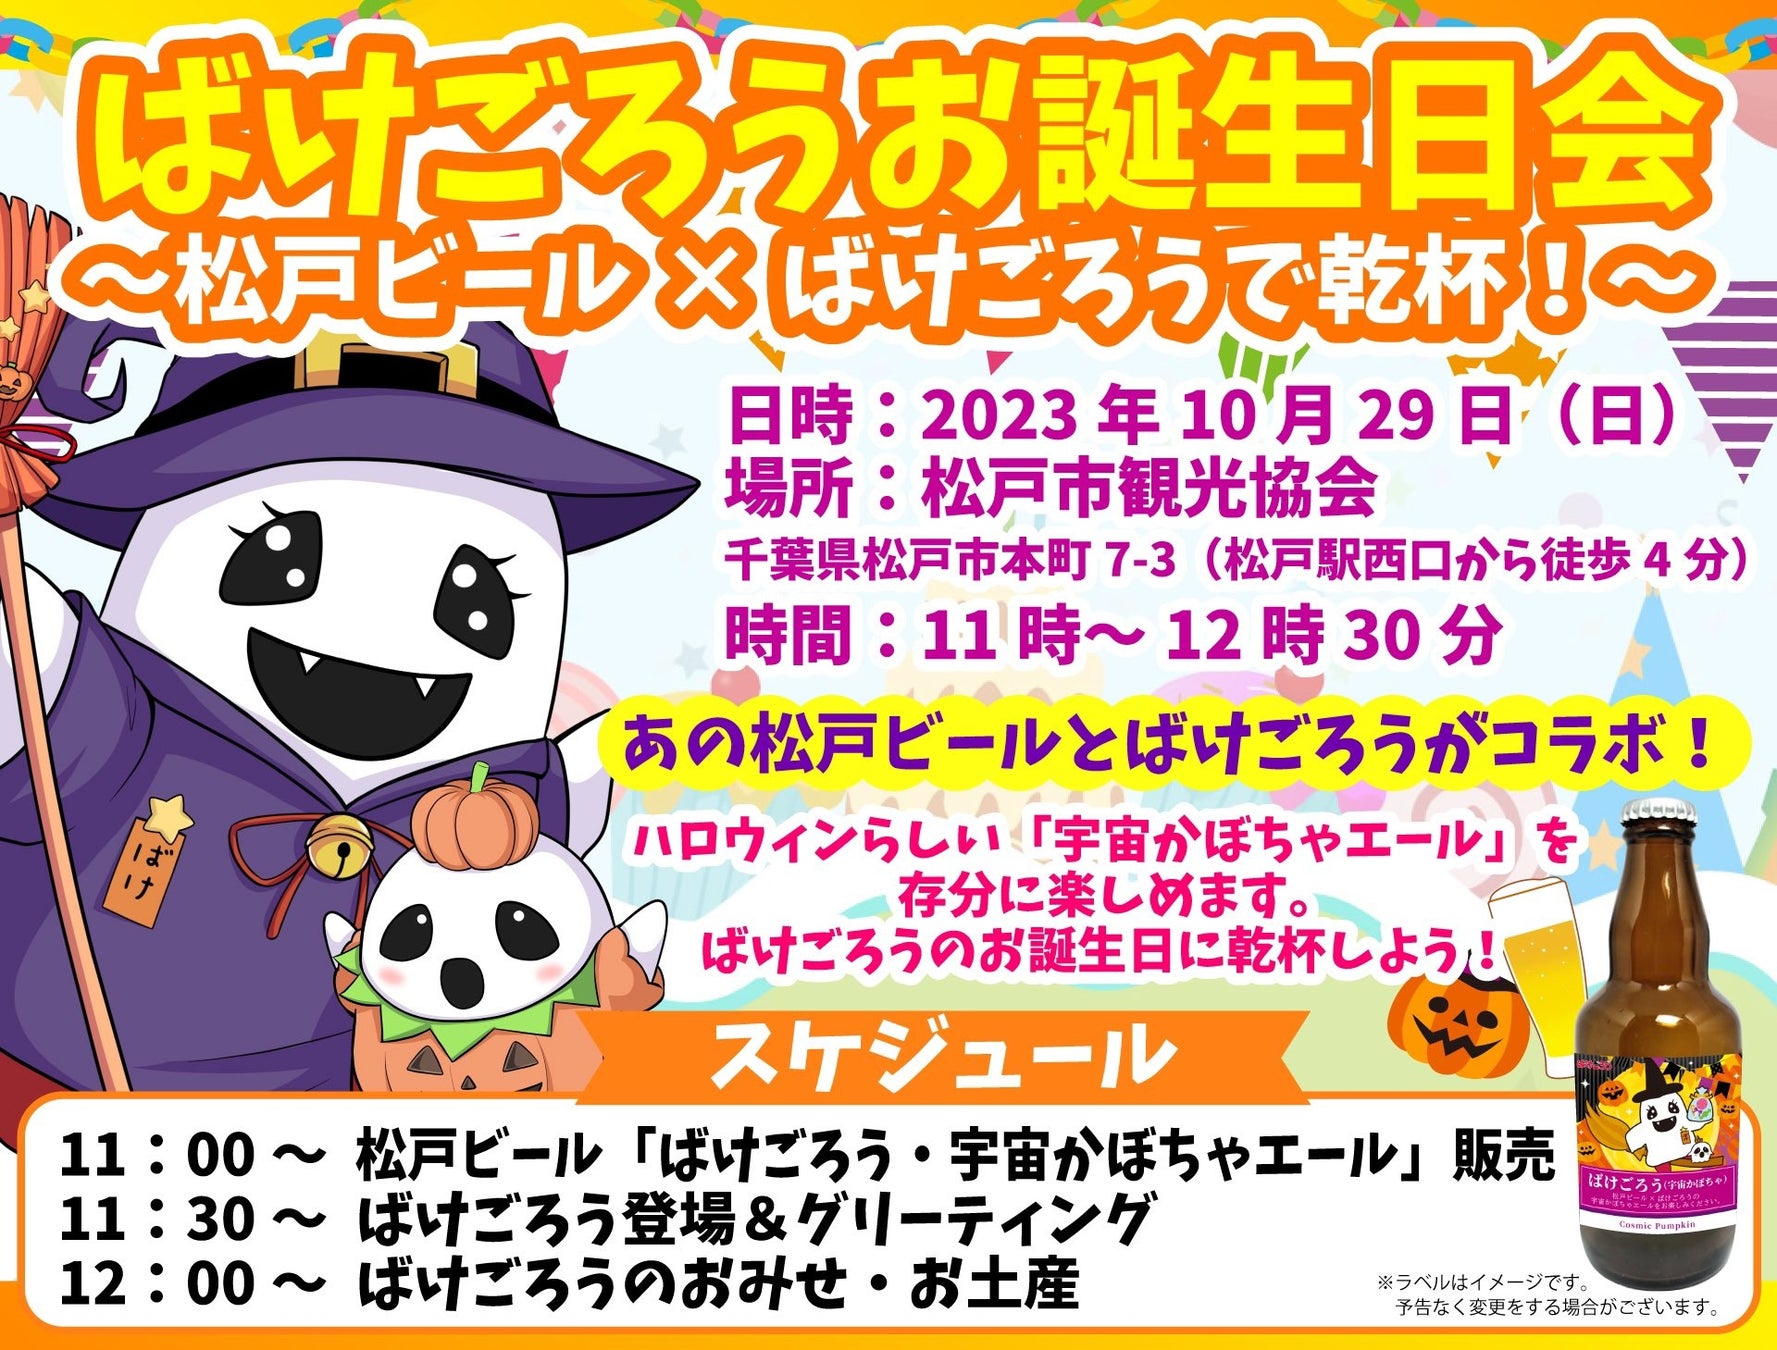 千葉県松戸市応援キャラクター「ばけごろう」がお誕生日を記念し、松戸人気店とコラボ商品を発売。のサブ画像4